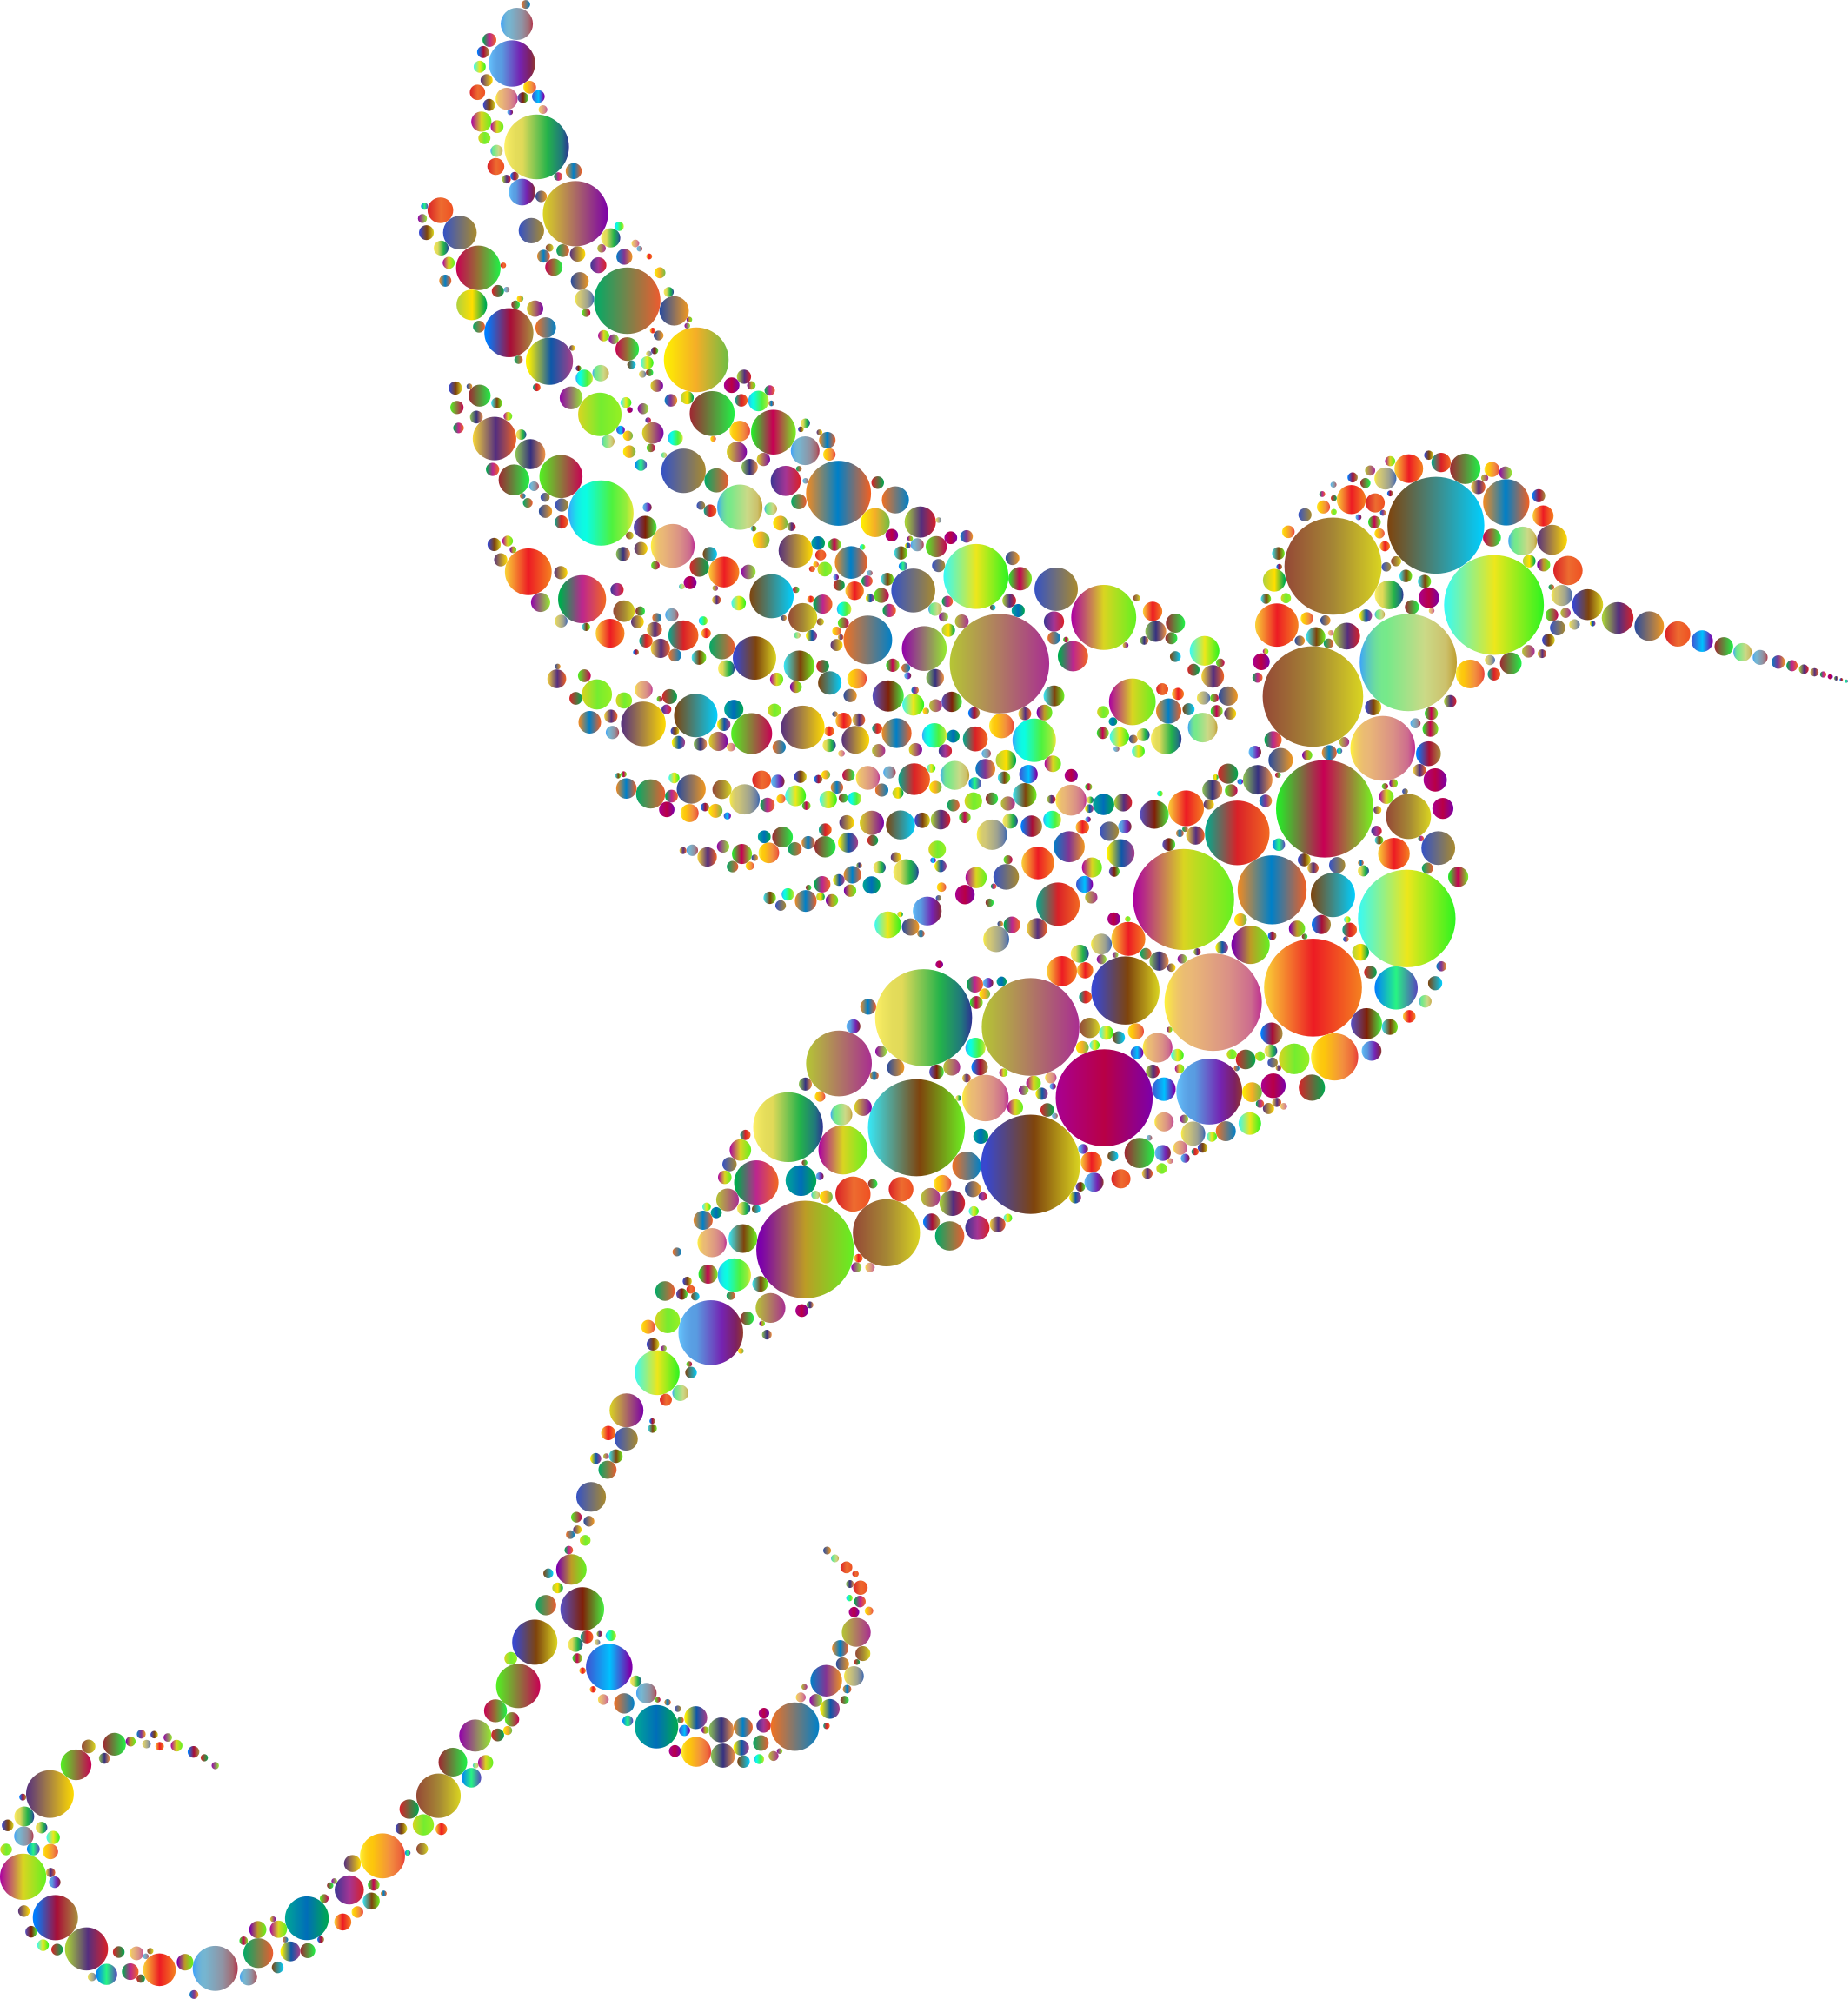 Hummingbird Circles 4 No Background - Hummingbird Images Clip Art (2126x2300)